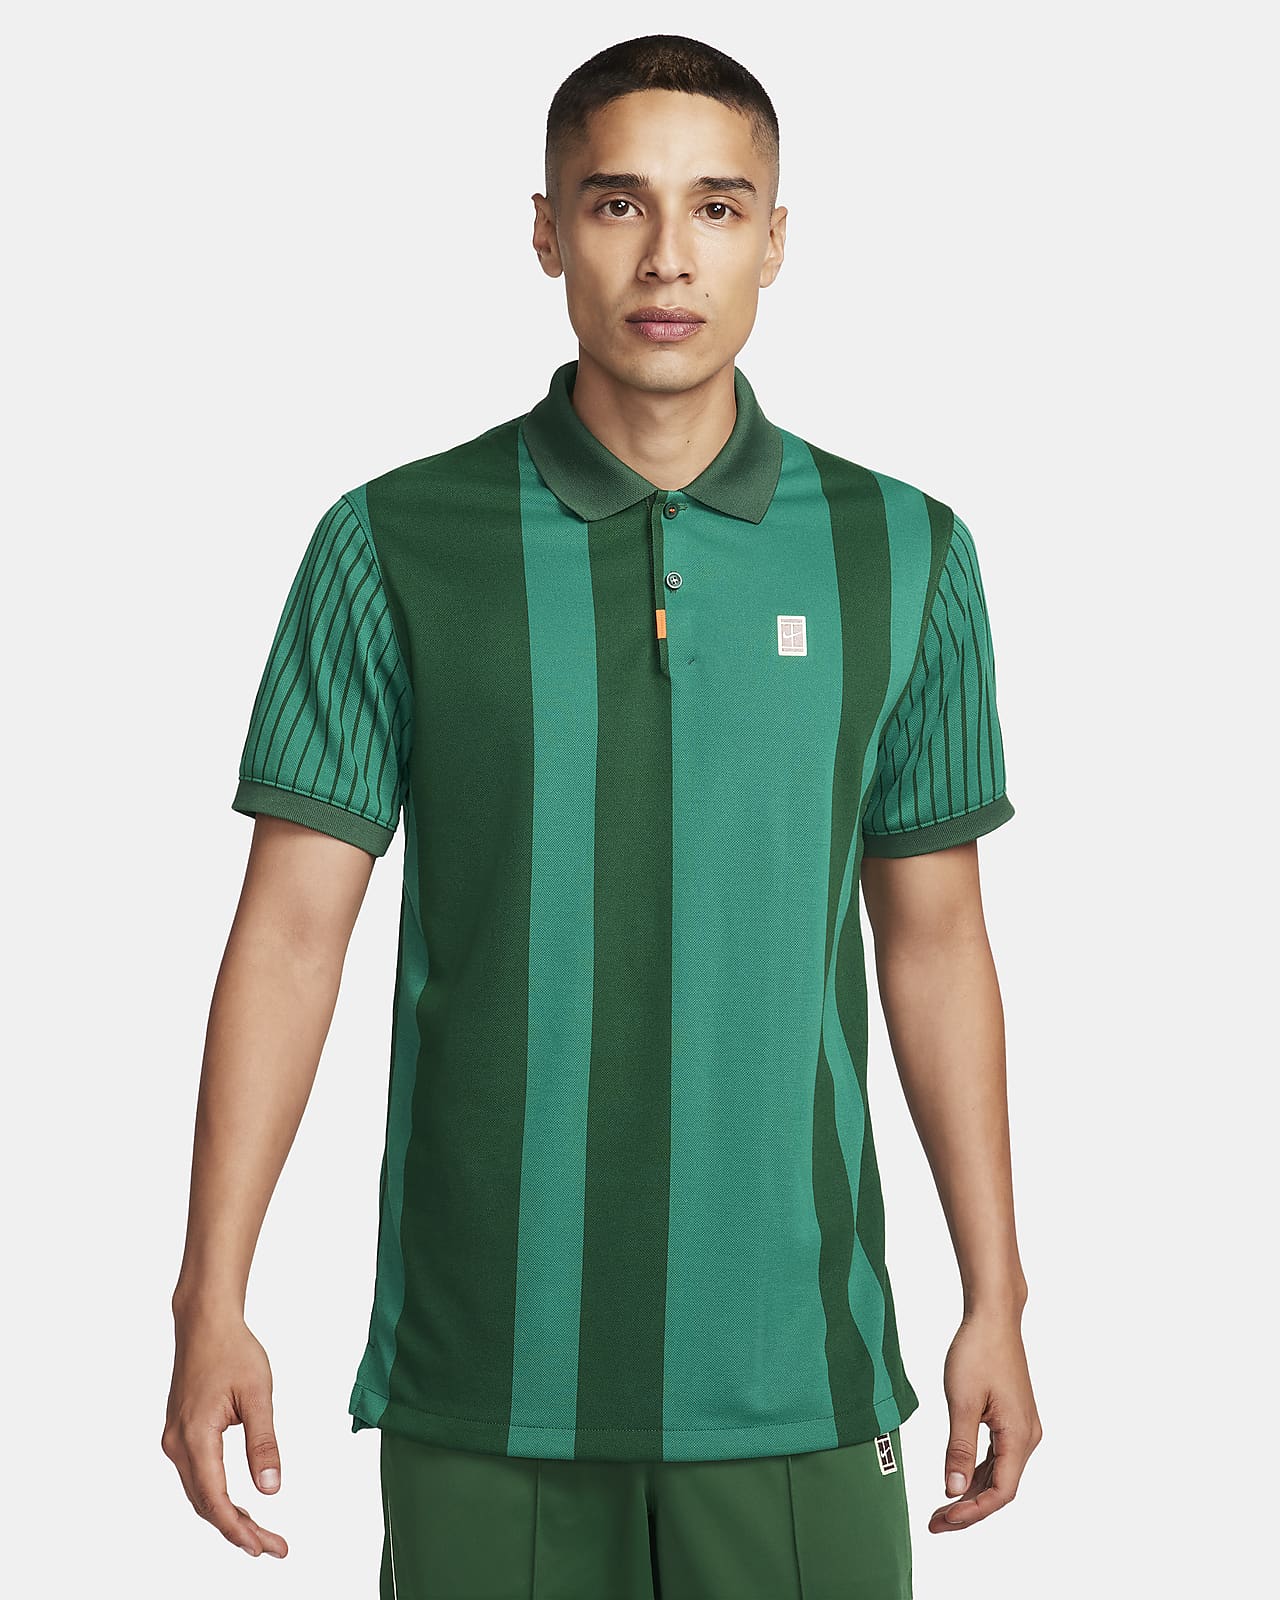 Ανδρική μπλούζα πόλο Dri-FIT The Nike Polo